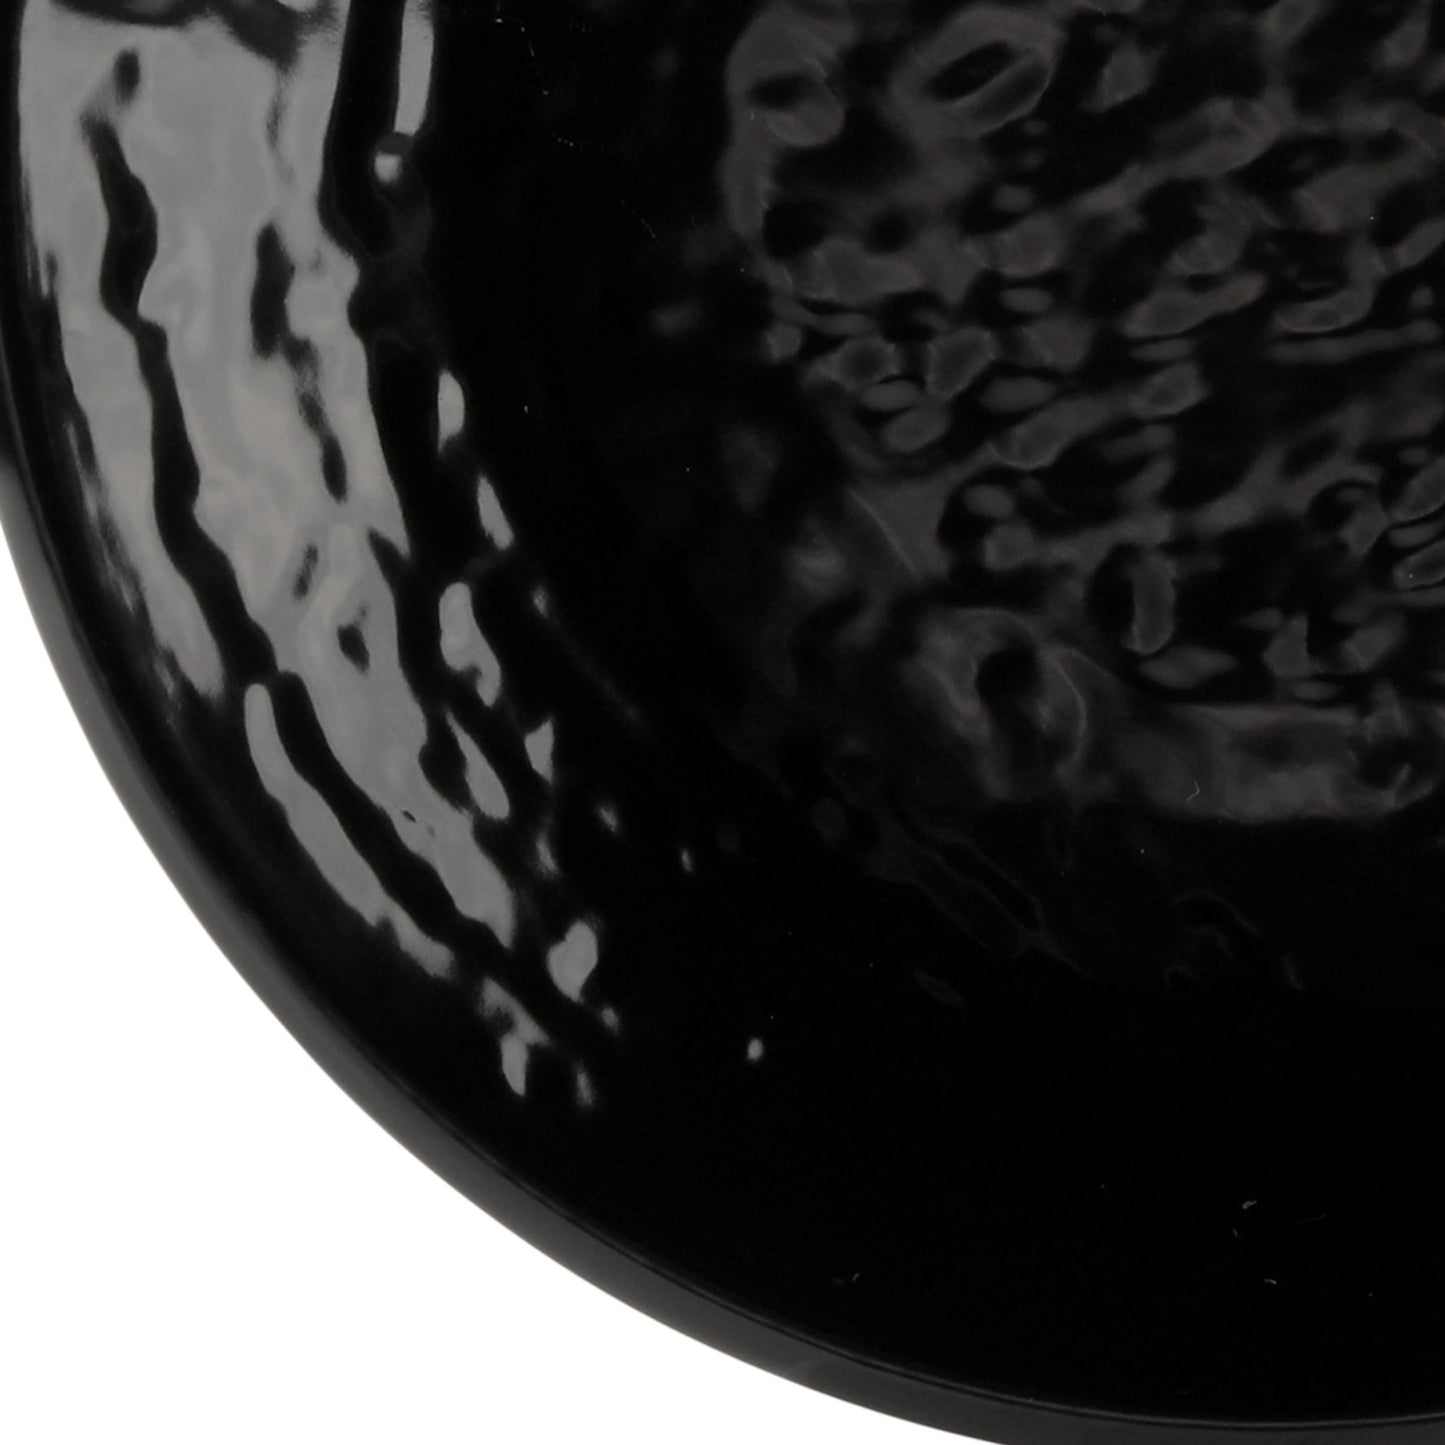 Melamine Round Pebble Plate - Black